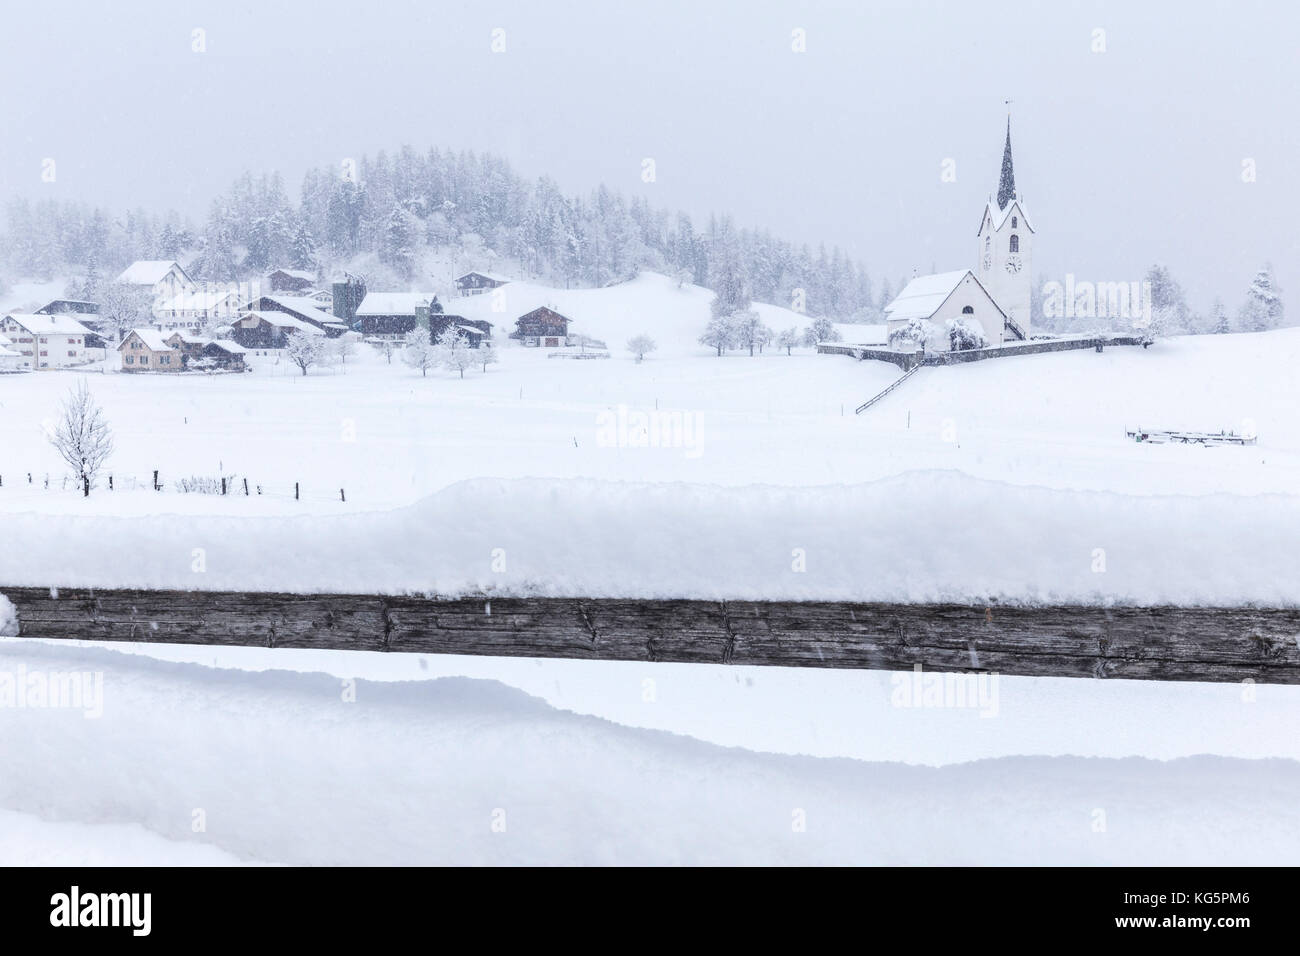 Le petit village de Versam avec son église pendant une tempête hivernale. Versam, Safiental, Surselva, Graubunden, Suisse, Europe Banque D'Images